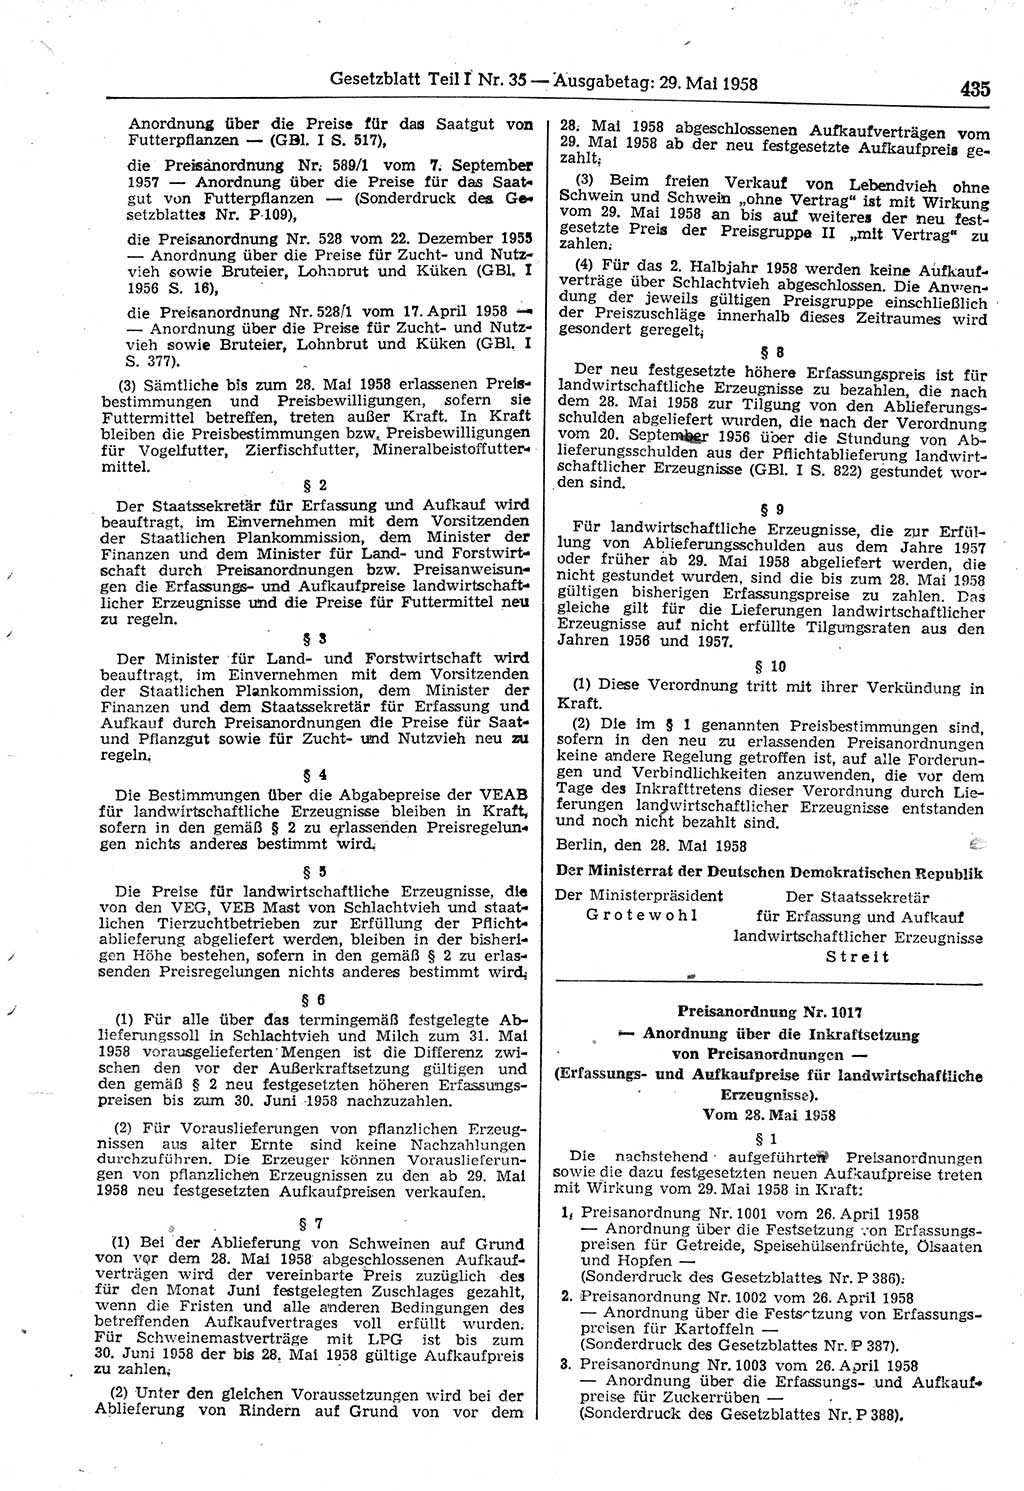 Gesetzblatt (GBl.) der Deutschen Demokratischen Republik (DDR) Teil Ⅰ 1958, Seite 435 (GBl. DDR Ⅰ 1958, S. 435)